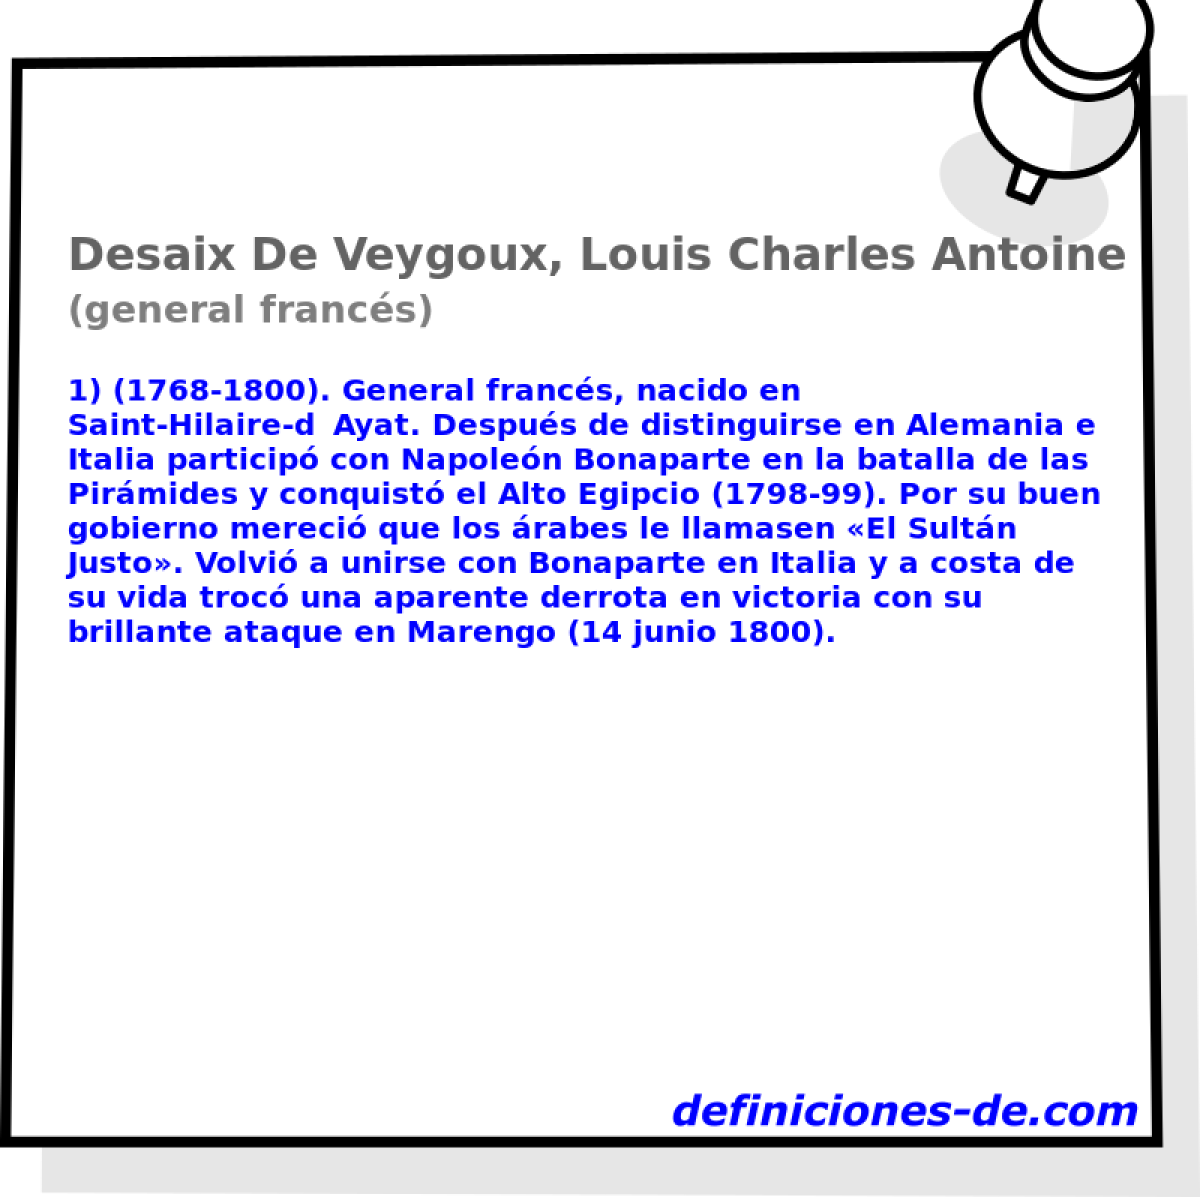 Desaix De Veygoux, Louis Charles Antoine (general francs)